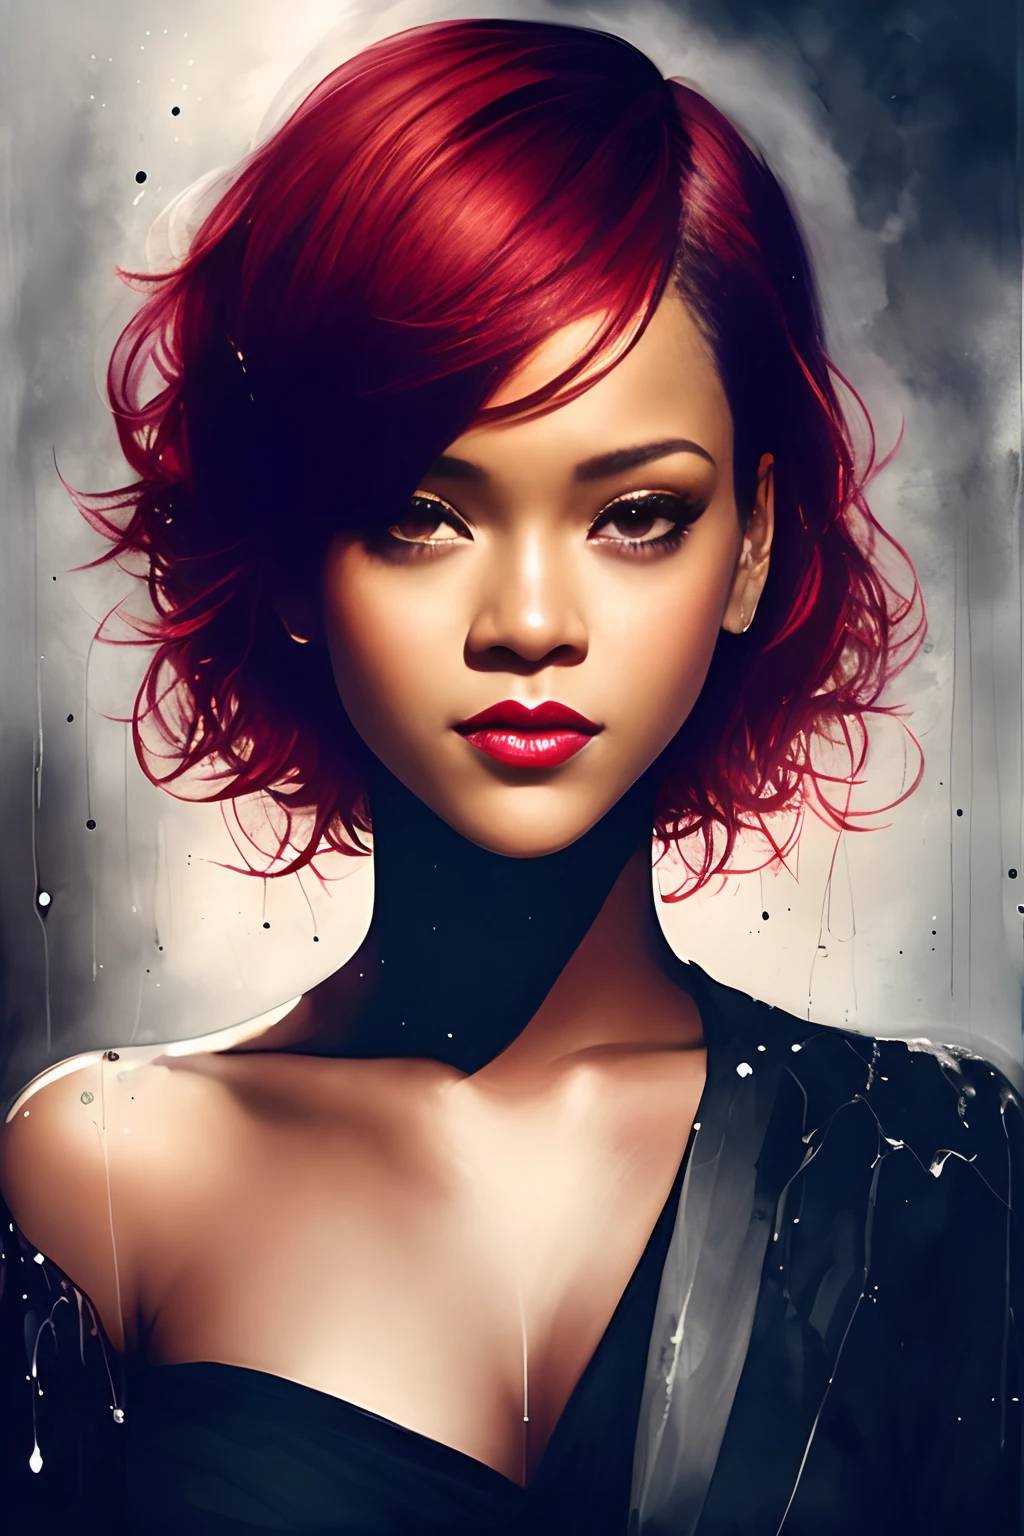 uma mulher (Rihanna) com cabelo ruivo curto, Sorriso, por Inês Cecile, design luminoso, Preto e branco, gotas de tinta, luzes de outono